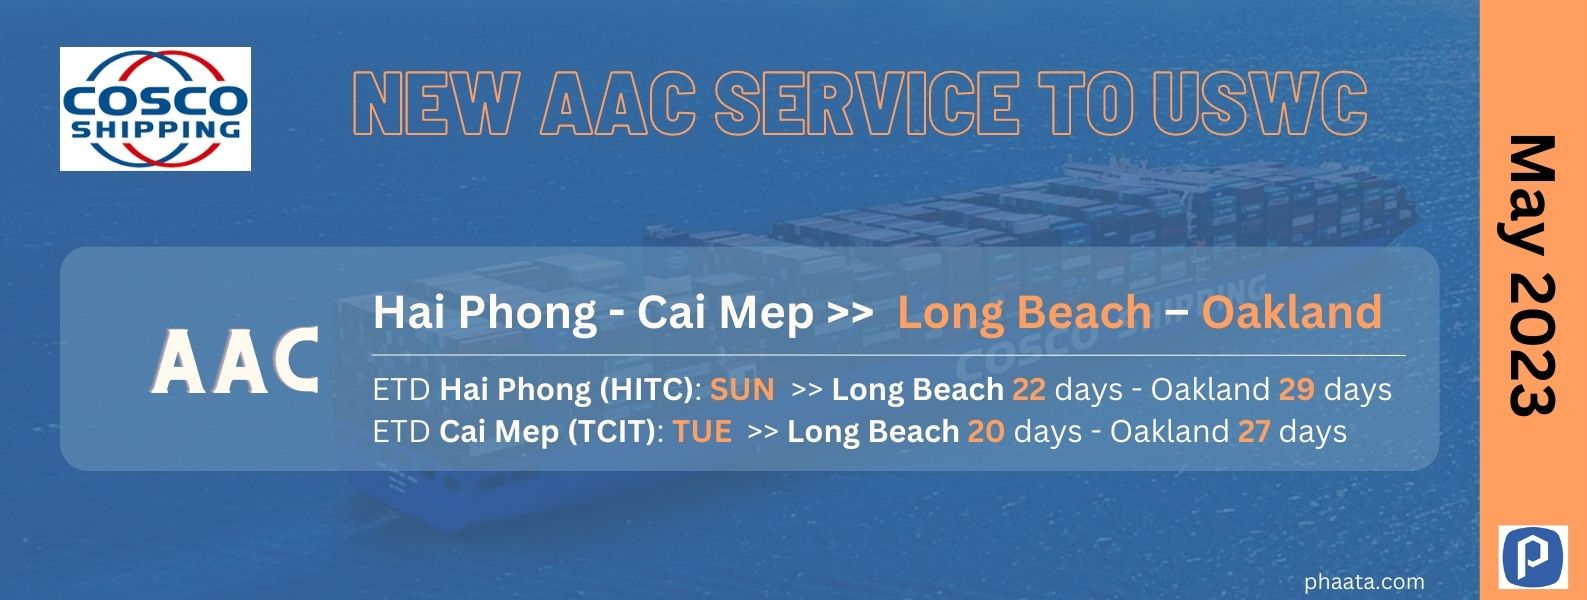 COSCO SHIPPING điều chỉnh lịch tàu dịch vụ AAC từ Hải Phòng – Cái Mép đến Bờ Tây Hoa Kỳ